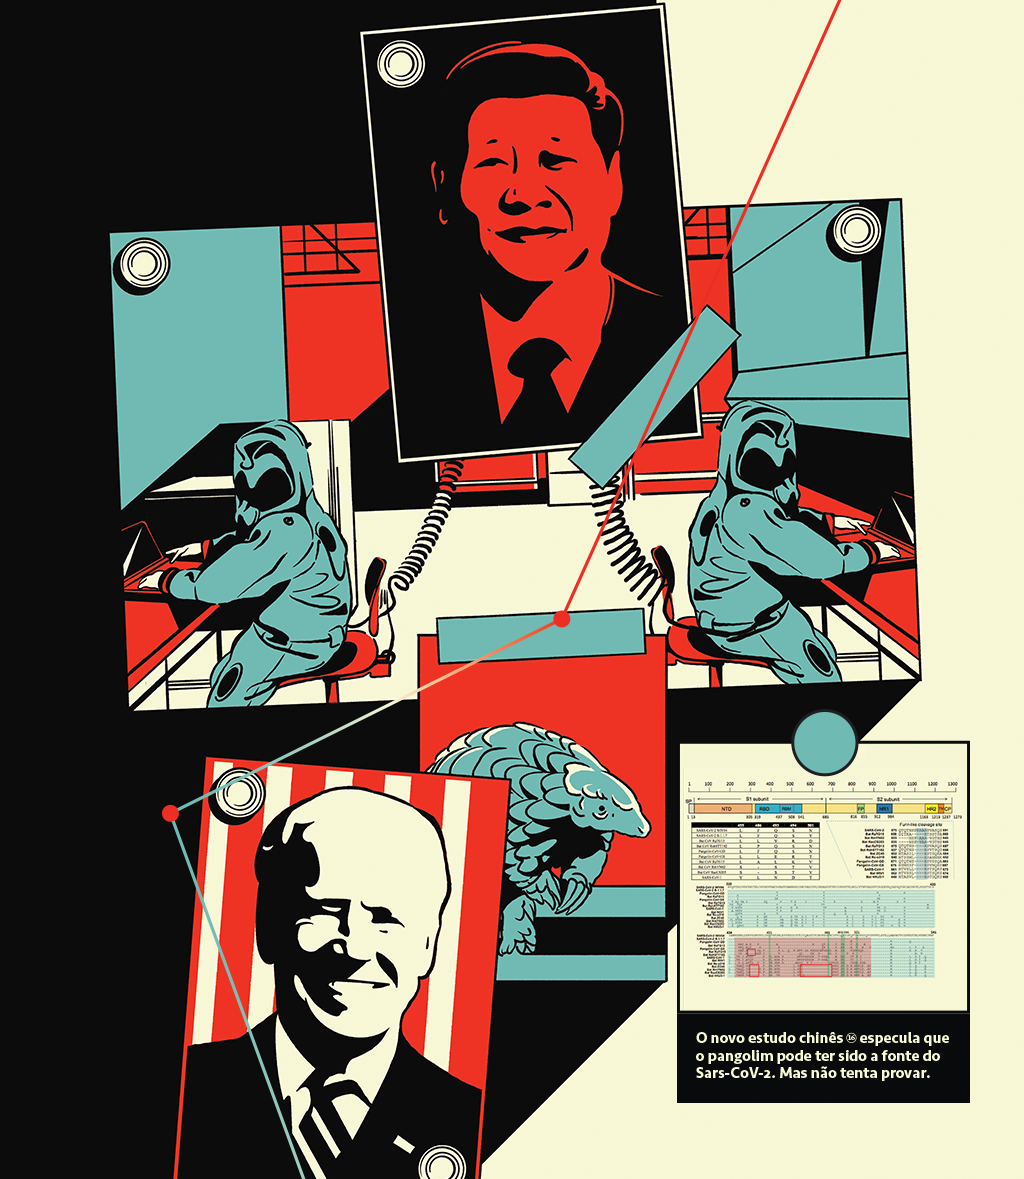 Ilustrações que simulam um painel com fotos. De cima para baixo, o retrato de Xi Jinping, dois cientistas em um laboratório, um pangolim e o retrato de Joe Biden.